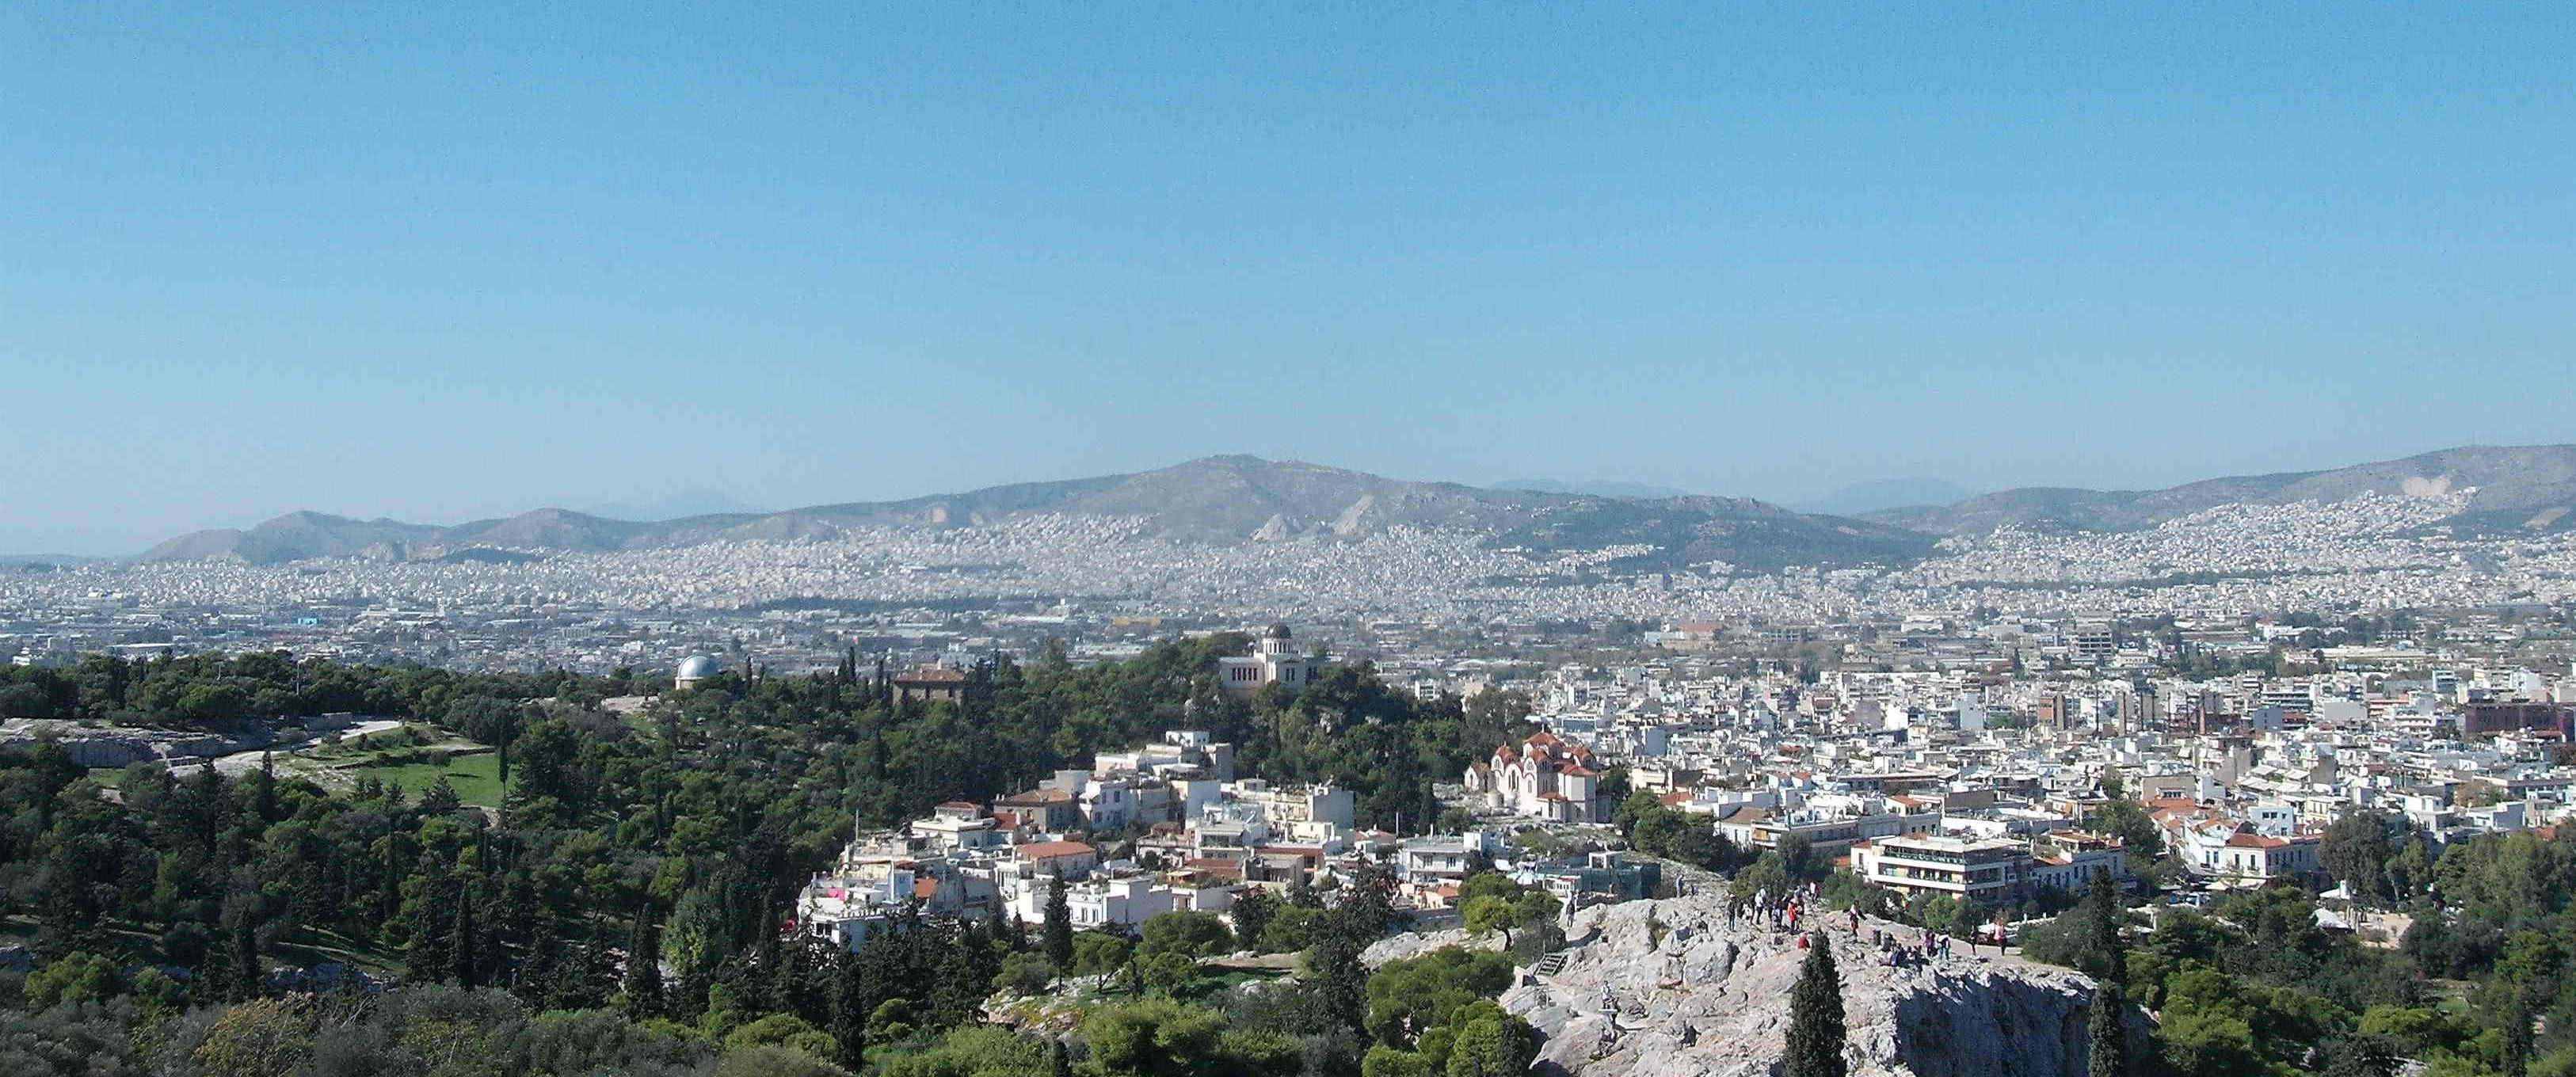 Athene wordt grotendeels door heuvels omgeven en ligt dus in een soort kom. Ook daar sterft het van het autoverkeer en de tweetakt-brommers. Je ruikt het als je buiten komt.